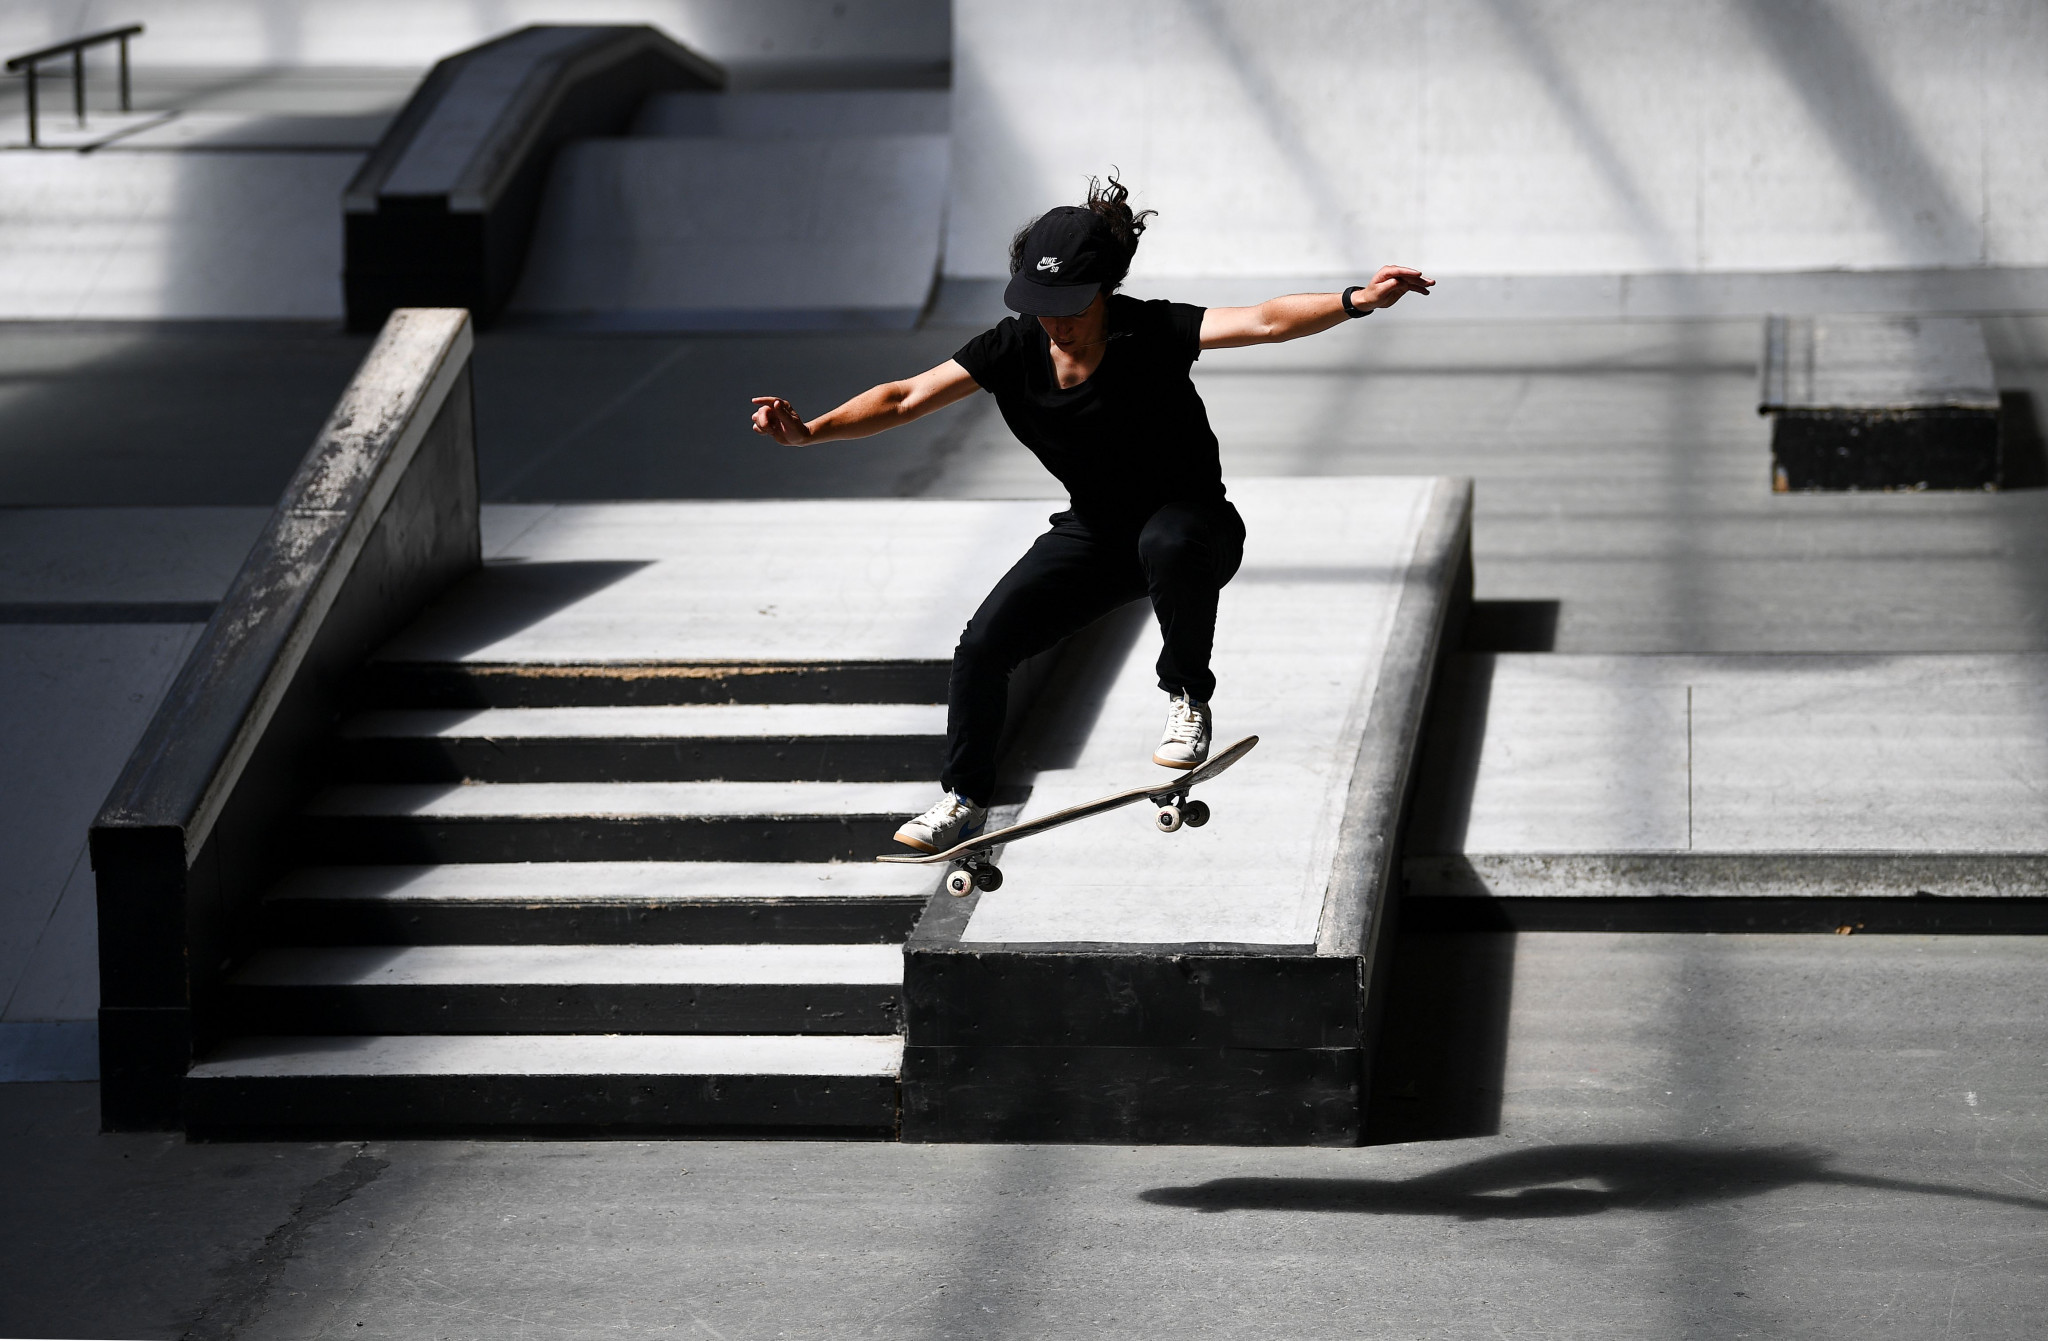 Le skateboard devrait faire ses débuts olympiques cette année © Getty Images